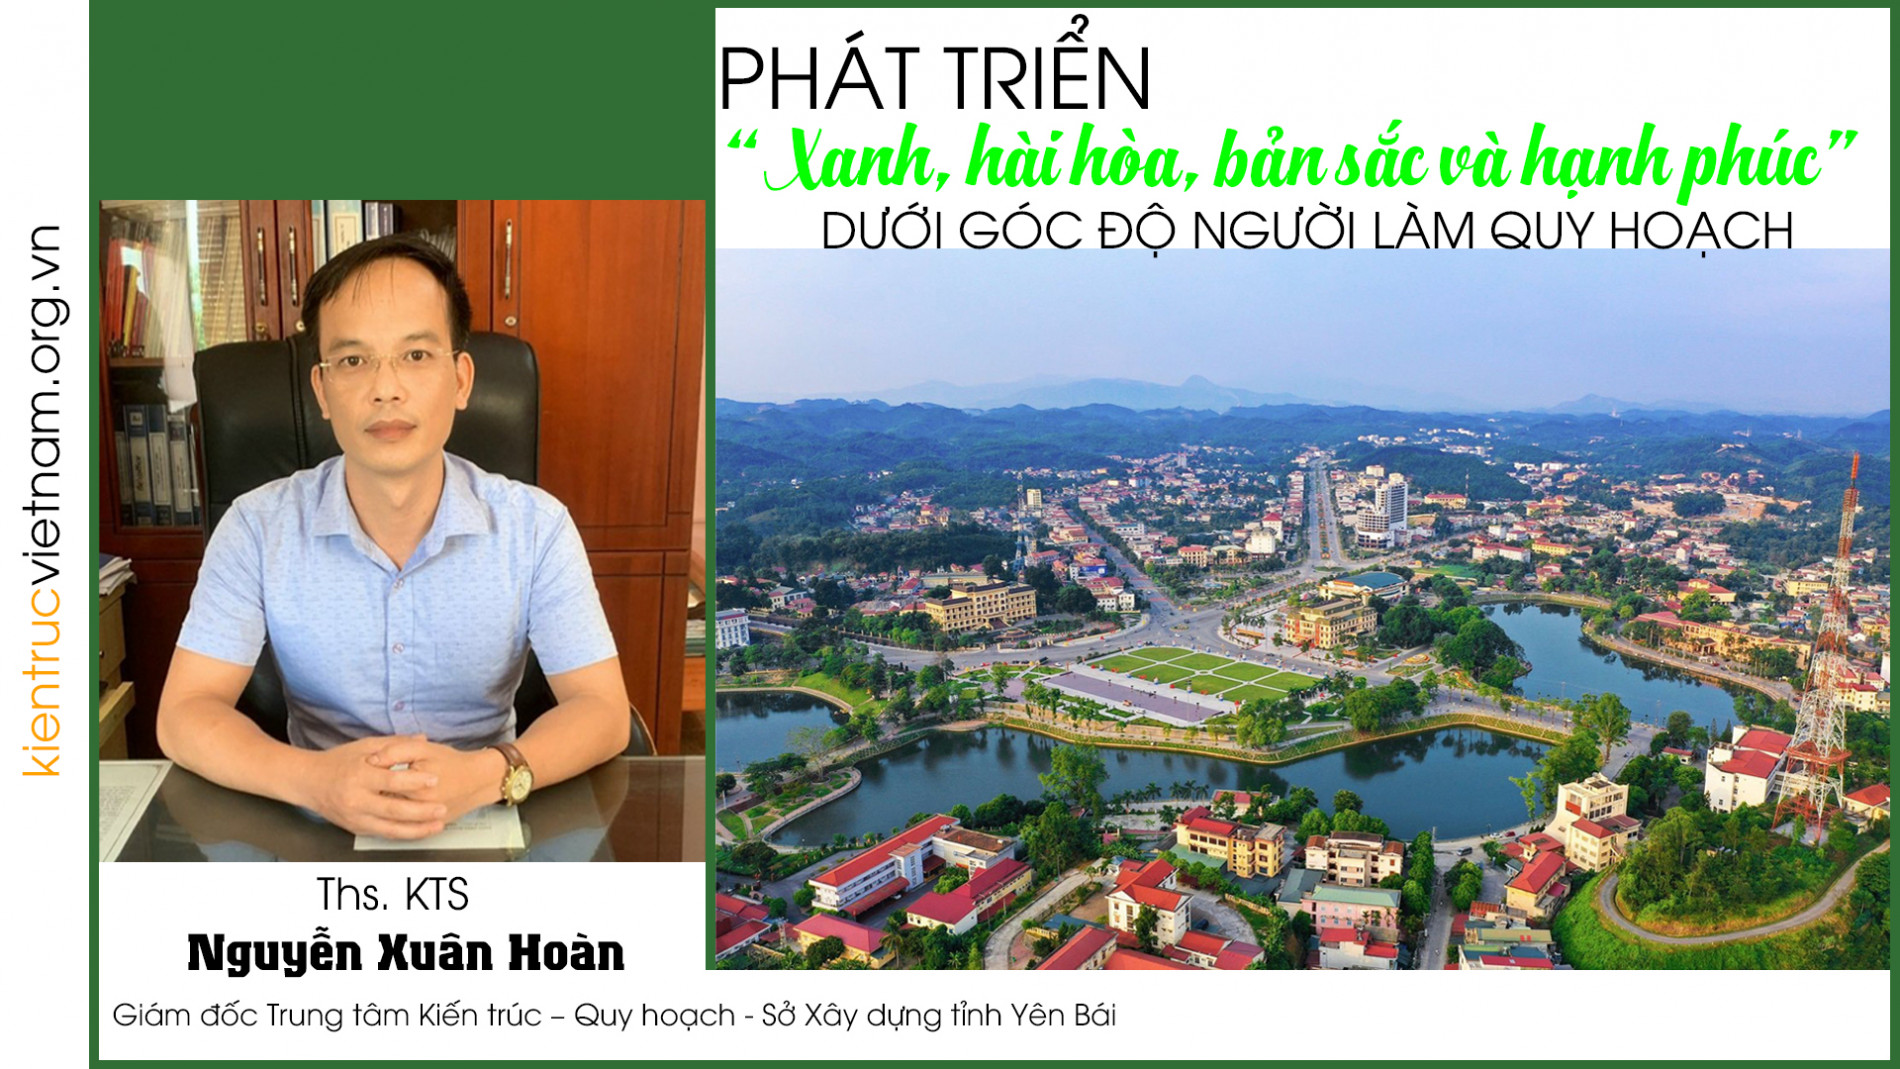 Phát triển “xanh, hài hòa, bản sắc và hạnh phúc” dưới góc độ người làm quy hoạch | Tạp chí Kiến trúc Việt Nam